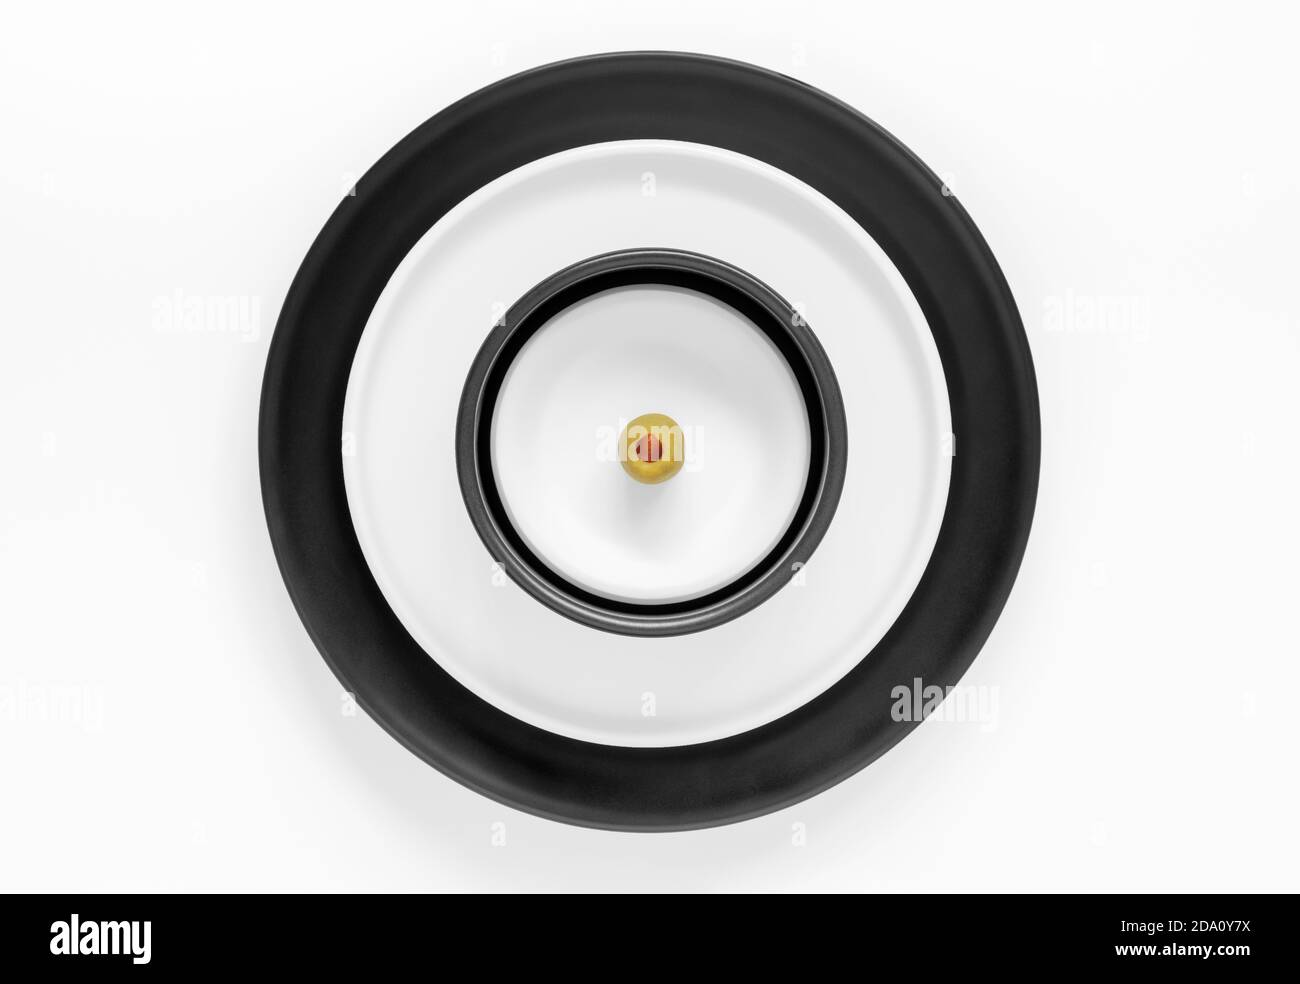 Gestapelte runde schwarze und weiße Platten mit einer einzigen gekrönt Oliv Stockfoto